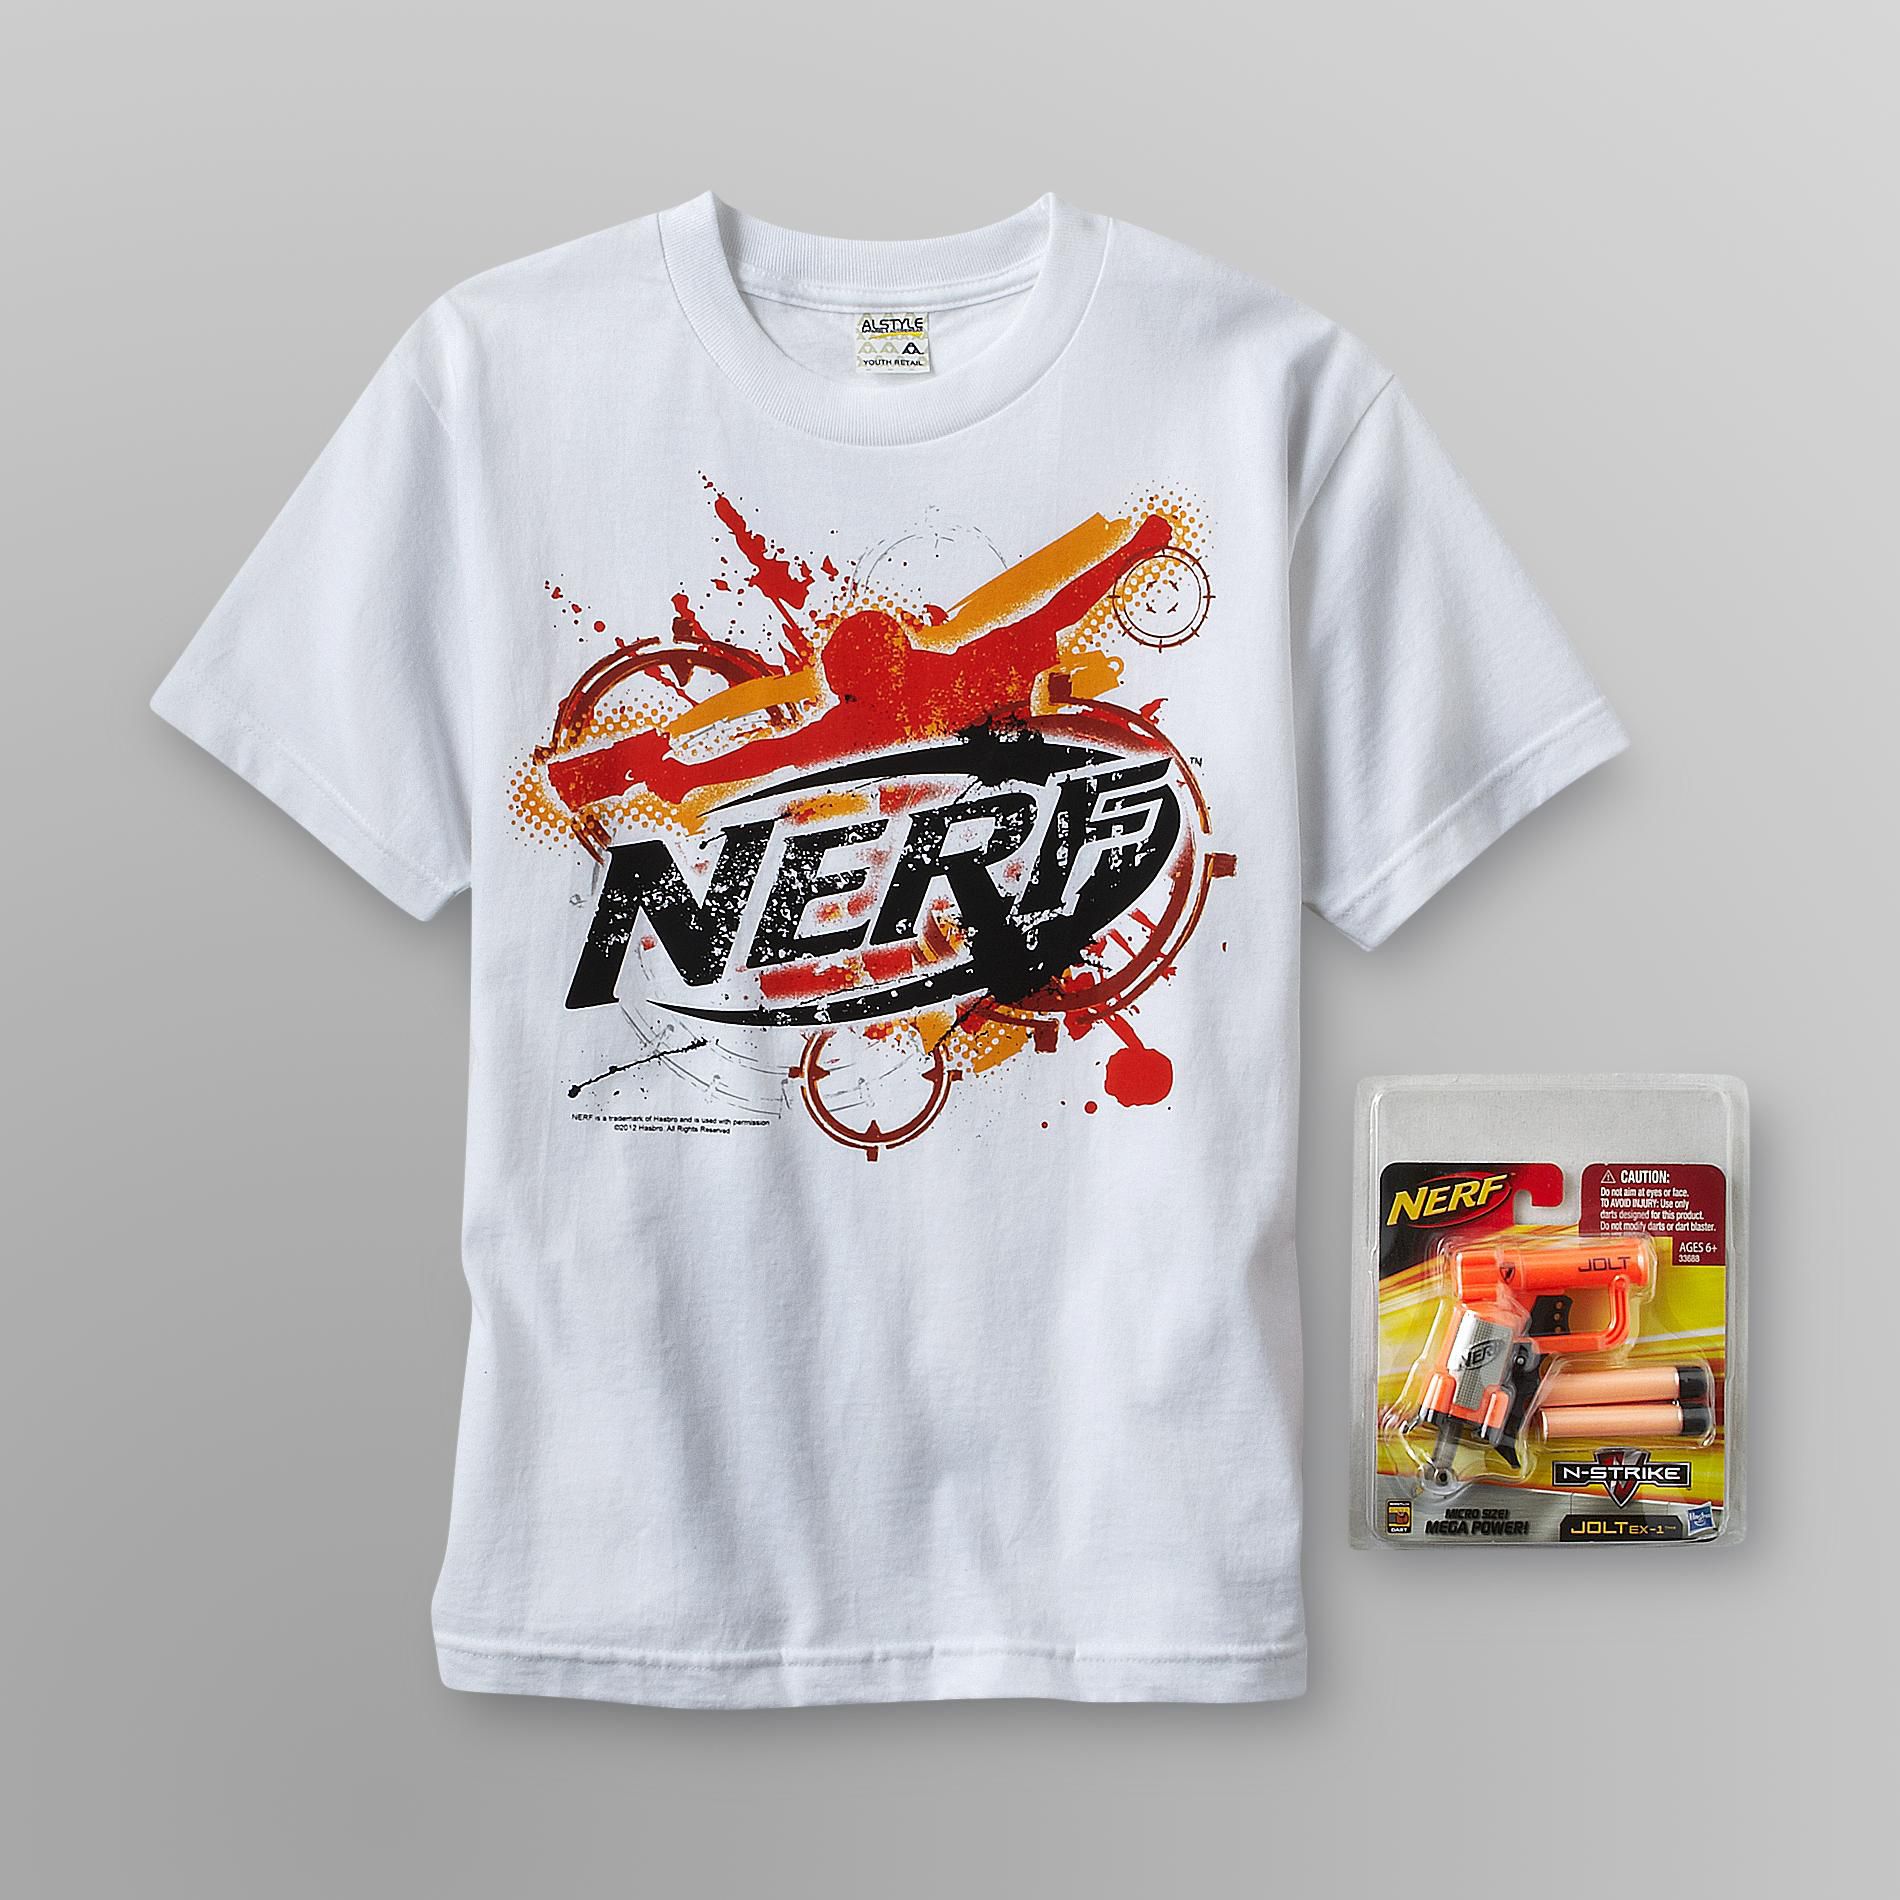 Nerf Boy's Graphic T-Shirt & Toy Dart Gun